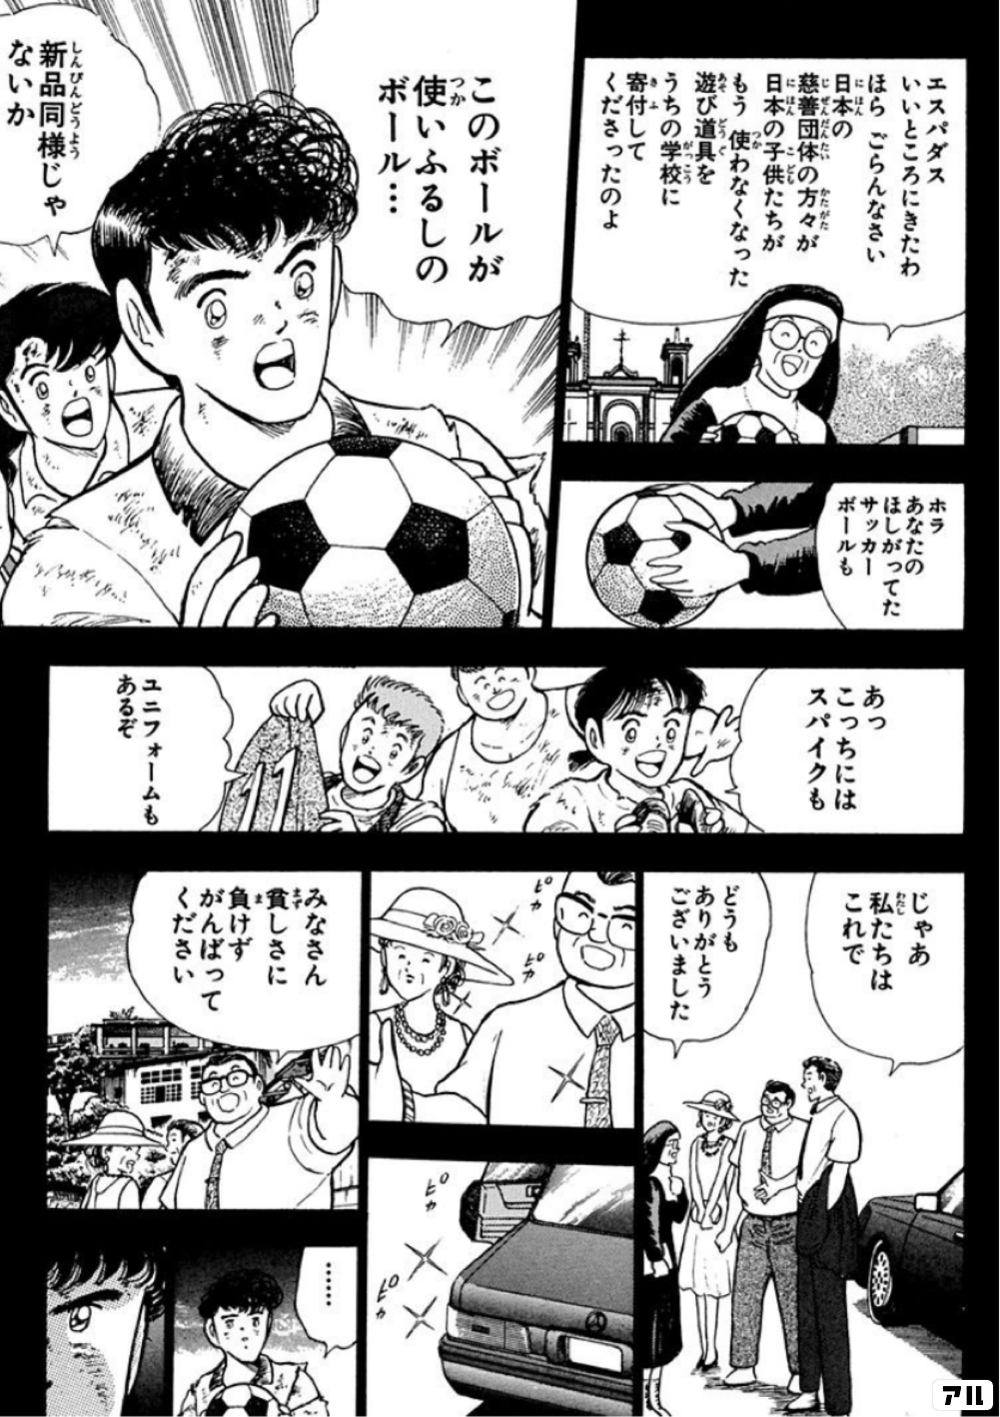 エスパダス いいところにきたわ ほらごらんなさい 日本の慈善団体の方々から 日本の子供たちが もう使わなくなった遊び道具を うちの学校に寄付してくださったのよ ホラあなたのほしがってた サッカーボールも このボールが使いふるしのボール 新品同様じゃないか あっ